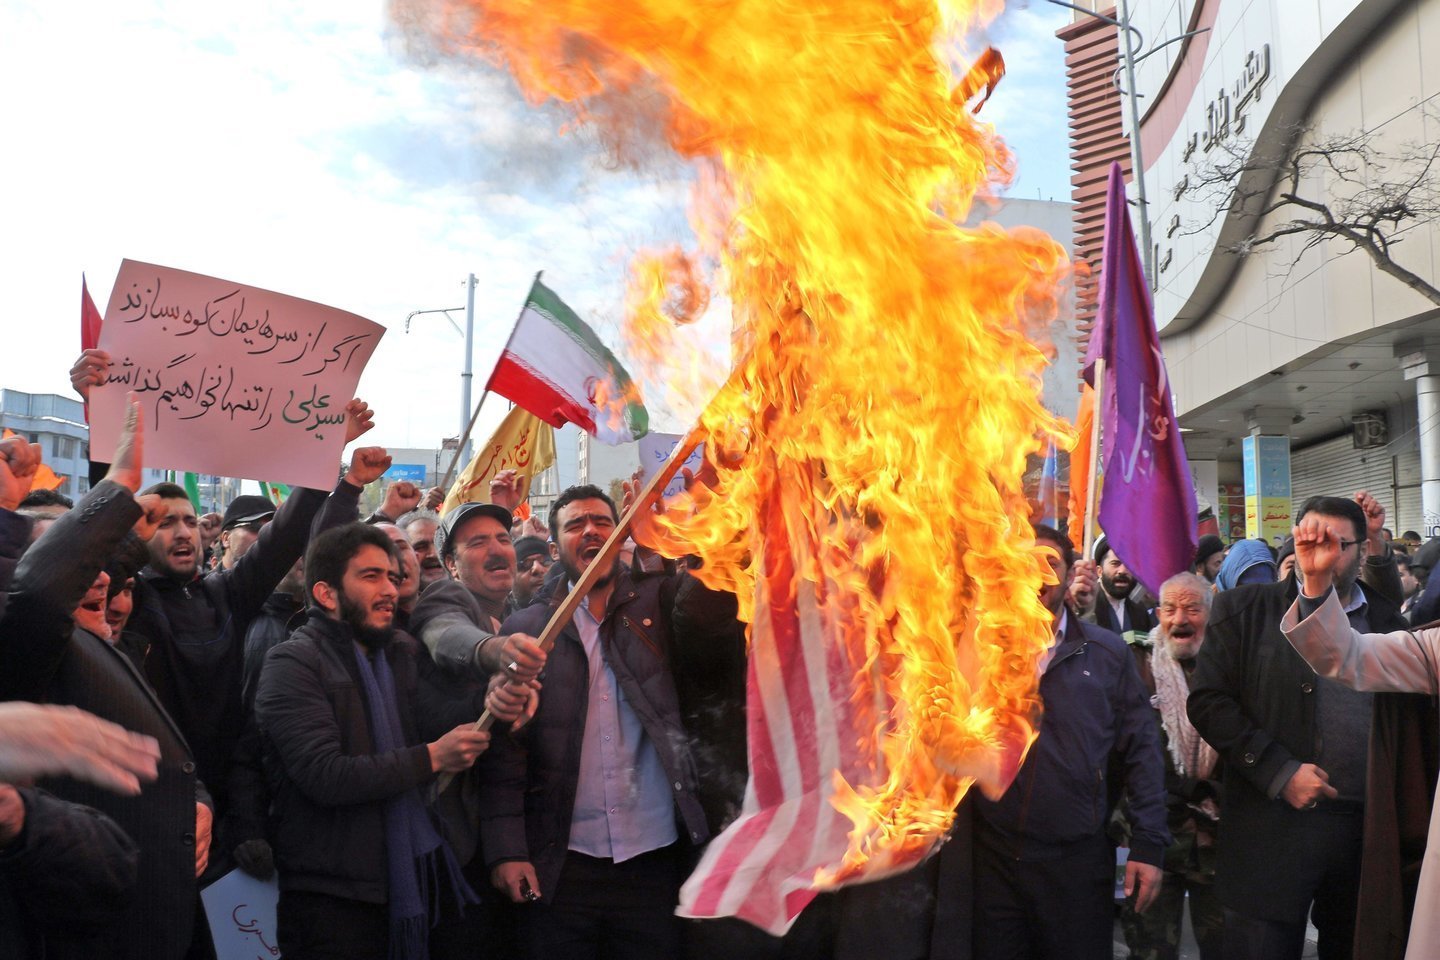  V. Ušackas apie įvykius Irane: viso to pasekmė gali būti nauji terorizmo aktai<br> AFP/Scanpix nuotr.